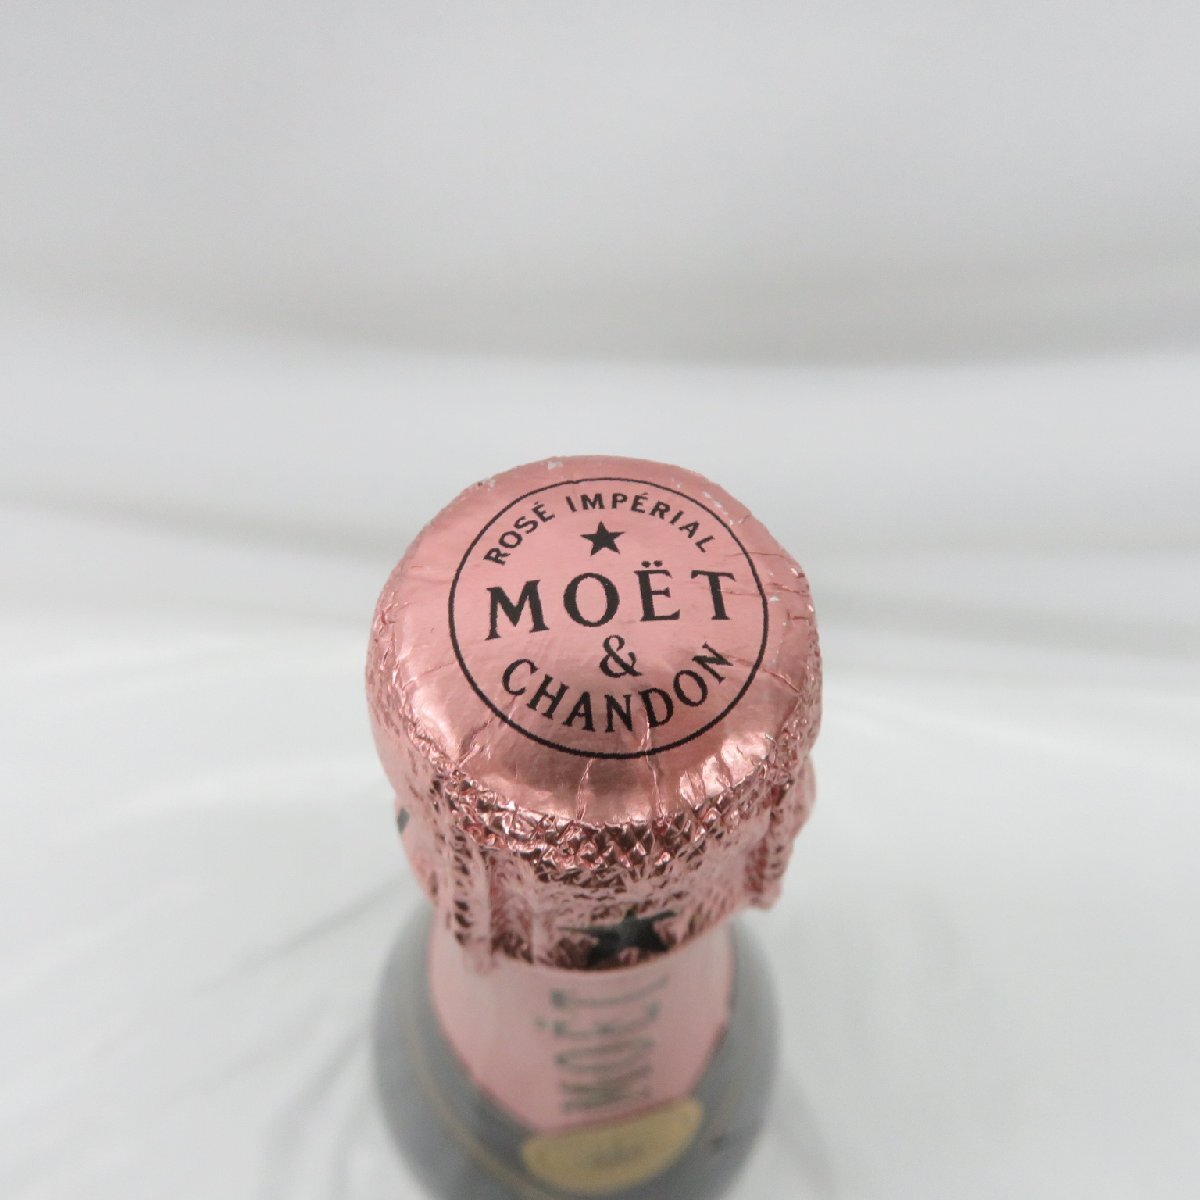 【未開栓】MOET&CHANDON モエ・エ・シャンドン ロゼ・アンペリアル ブリュット シャンパン 750ml 12% 836121460 0423の画像4